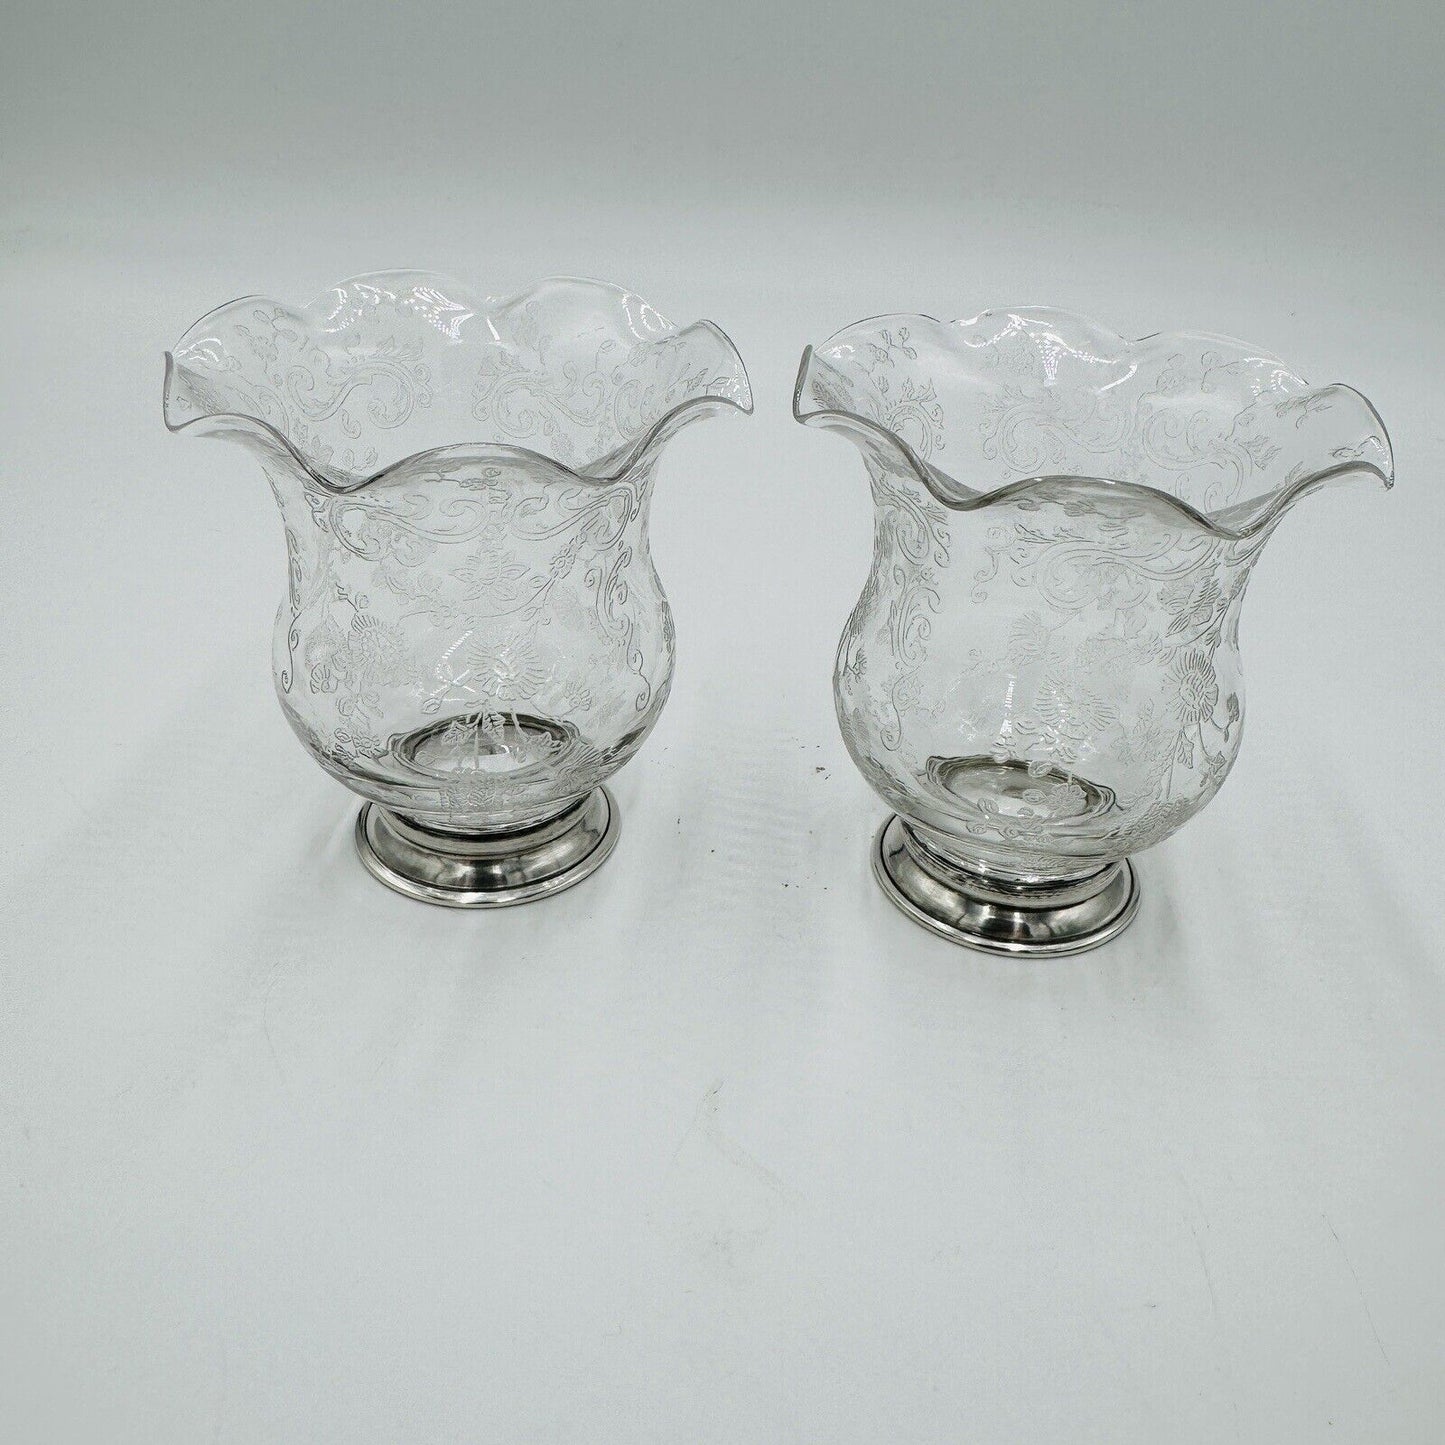 Vintage Cambridge Glass CHANTILLY Cigarette URN Vase Sterling Silver Foot Rim